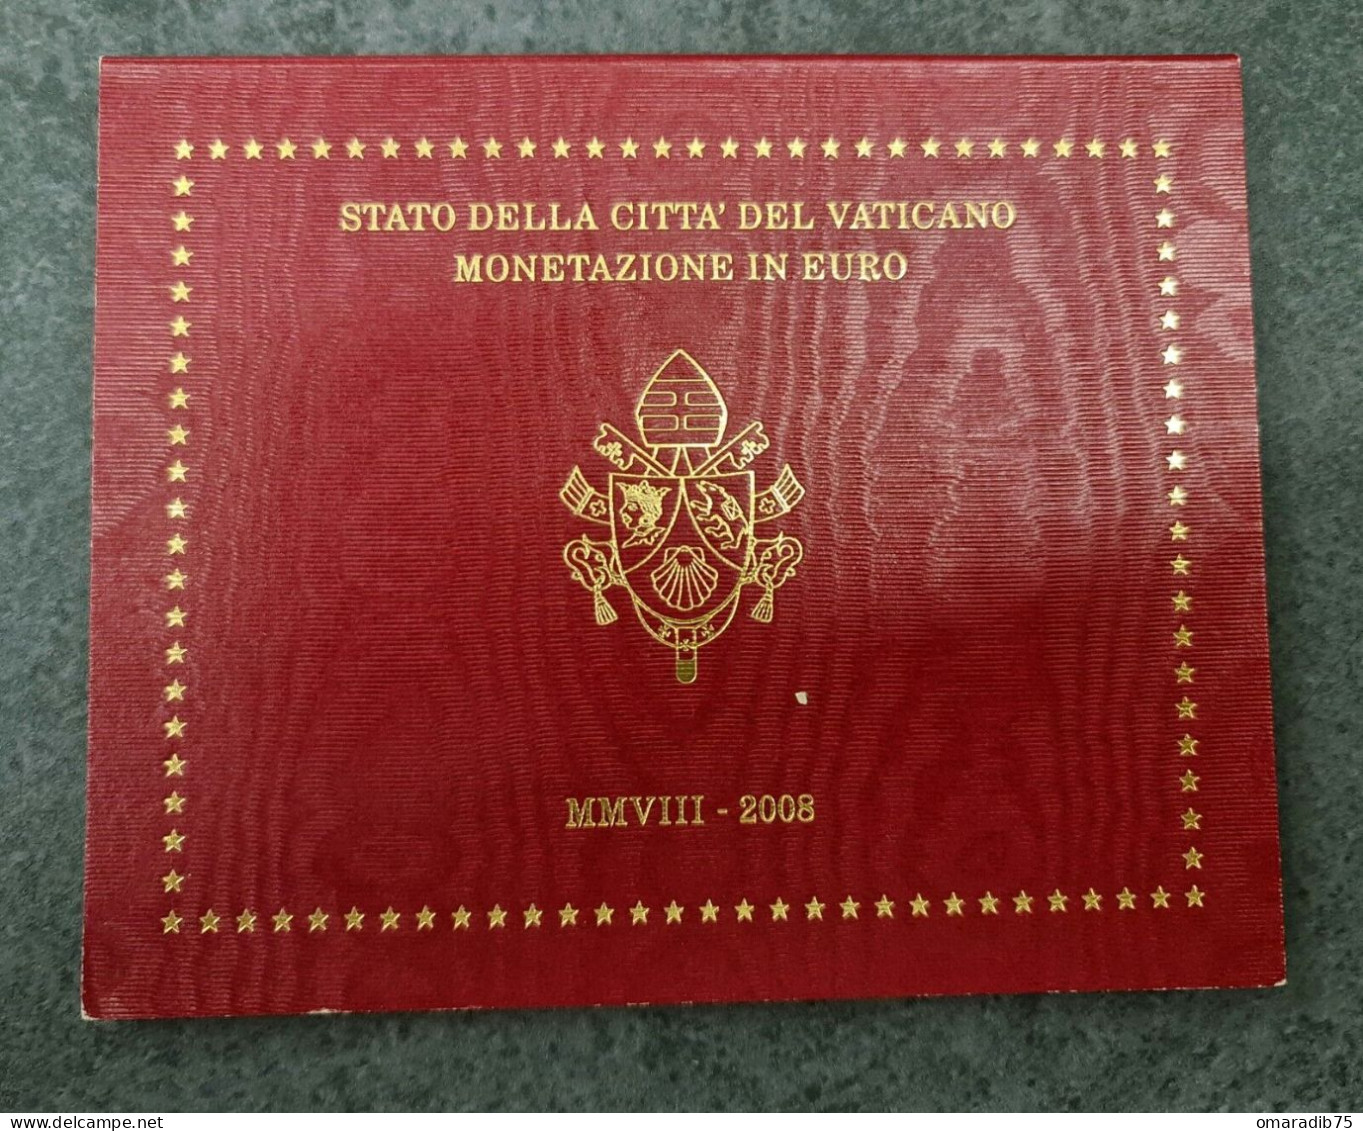 VATICAN Coffret Euros Vatican 2012 BE PROOF FDC - Vatican